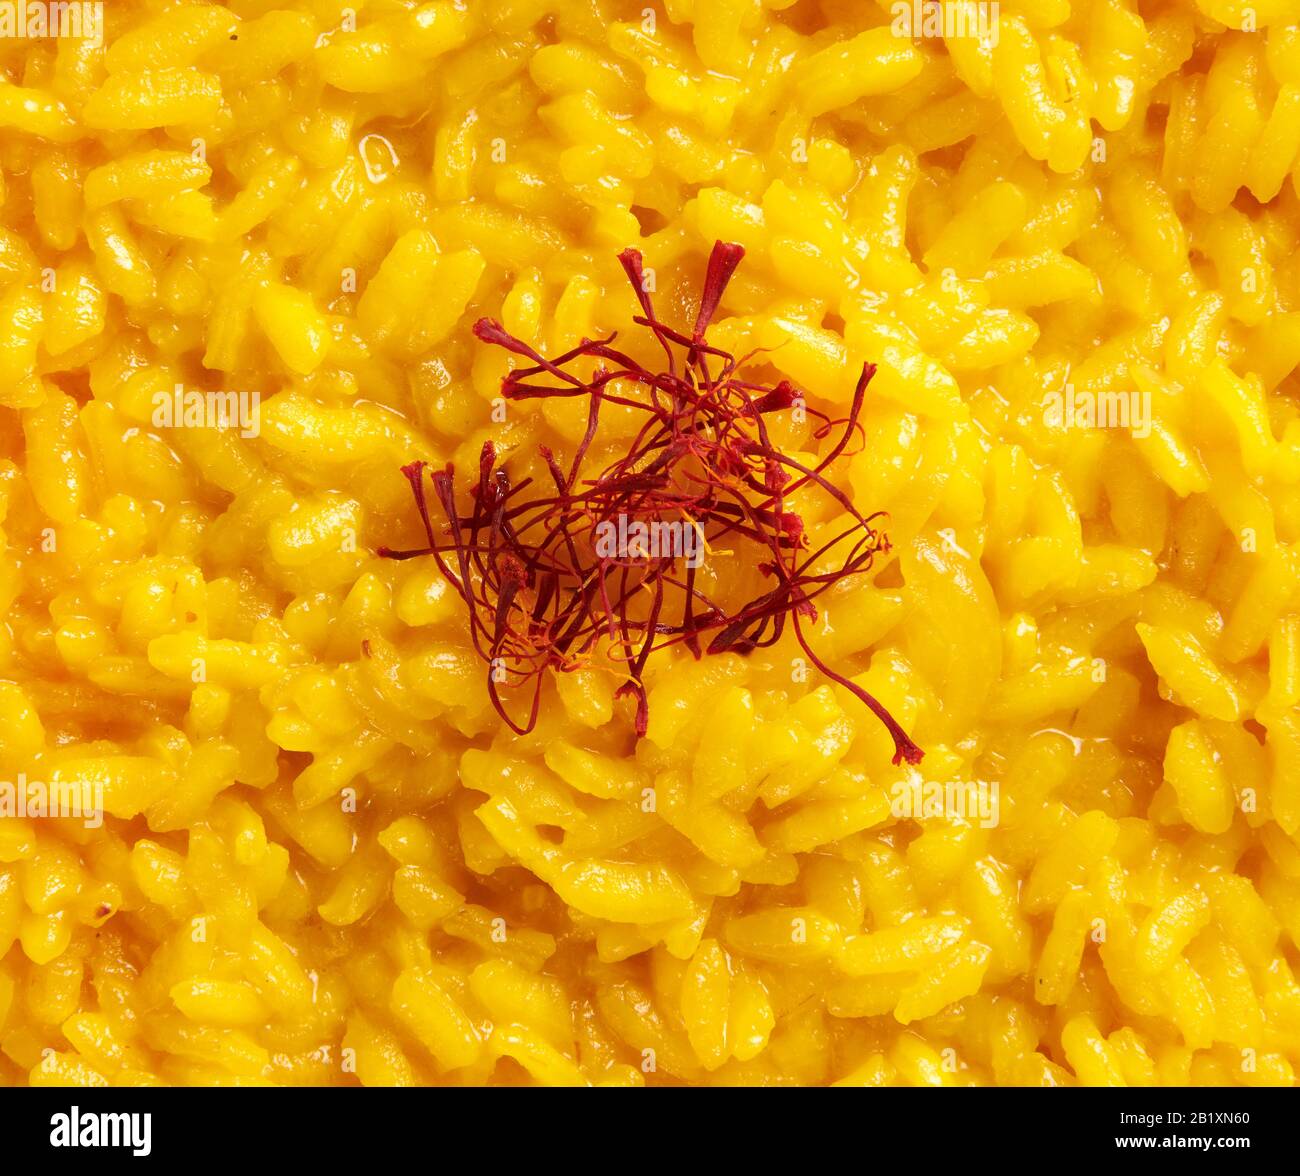 Vollformattextur aus cremig gelbem italienischen Risotto Reis, garniert mit Safranpistillen oder Fäden, einem luxuriösen Gewürz, aus der Region Lombardei in Italien Stockfoto